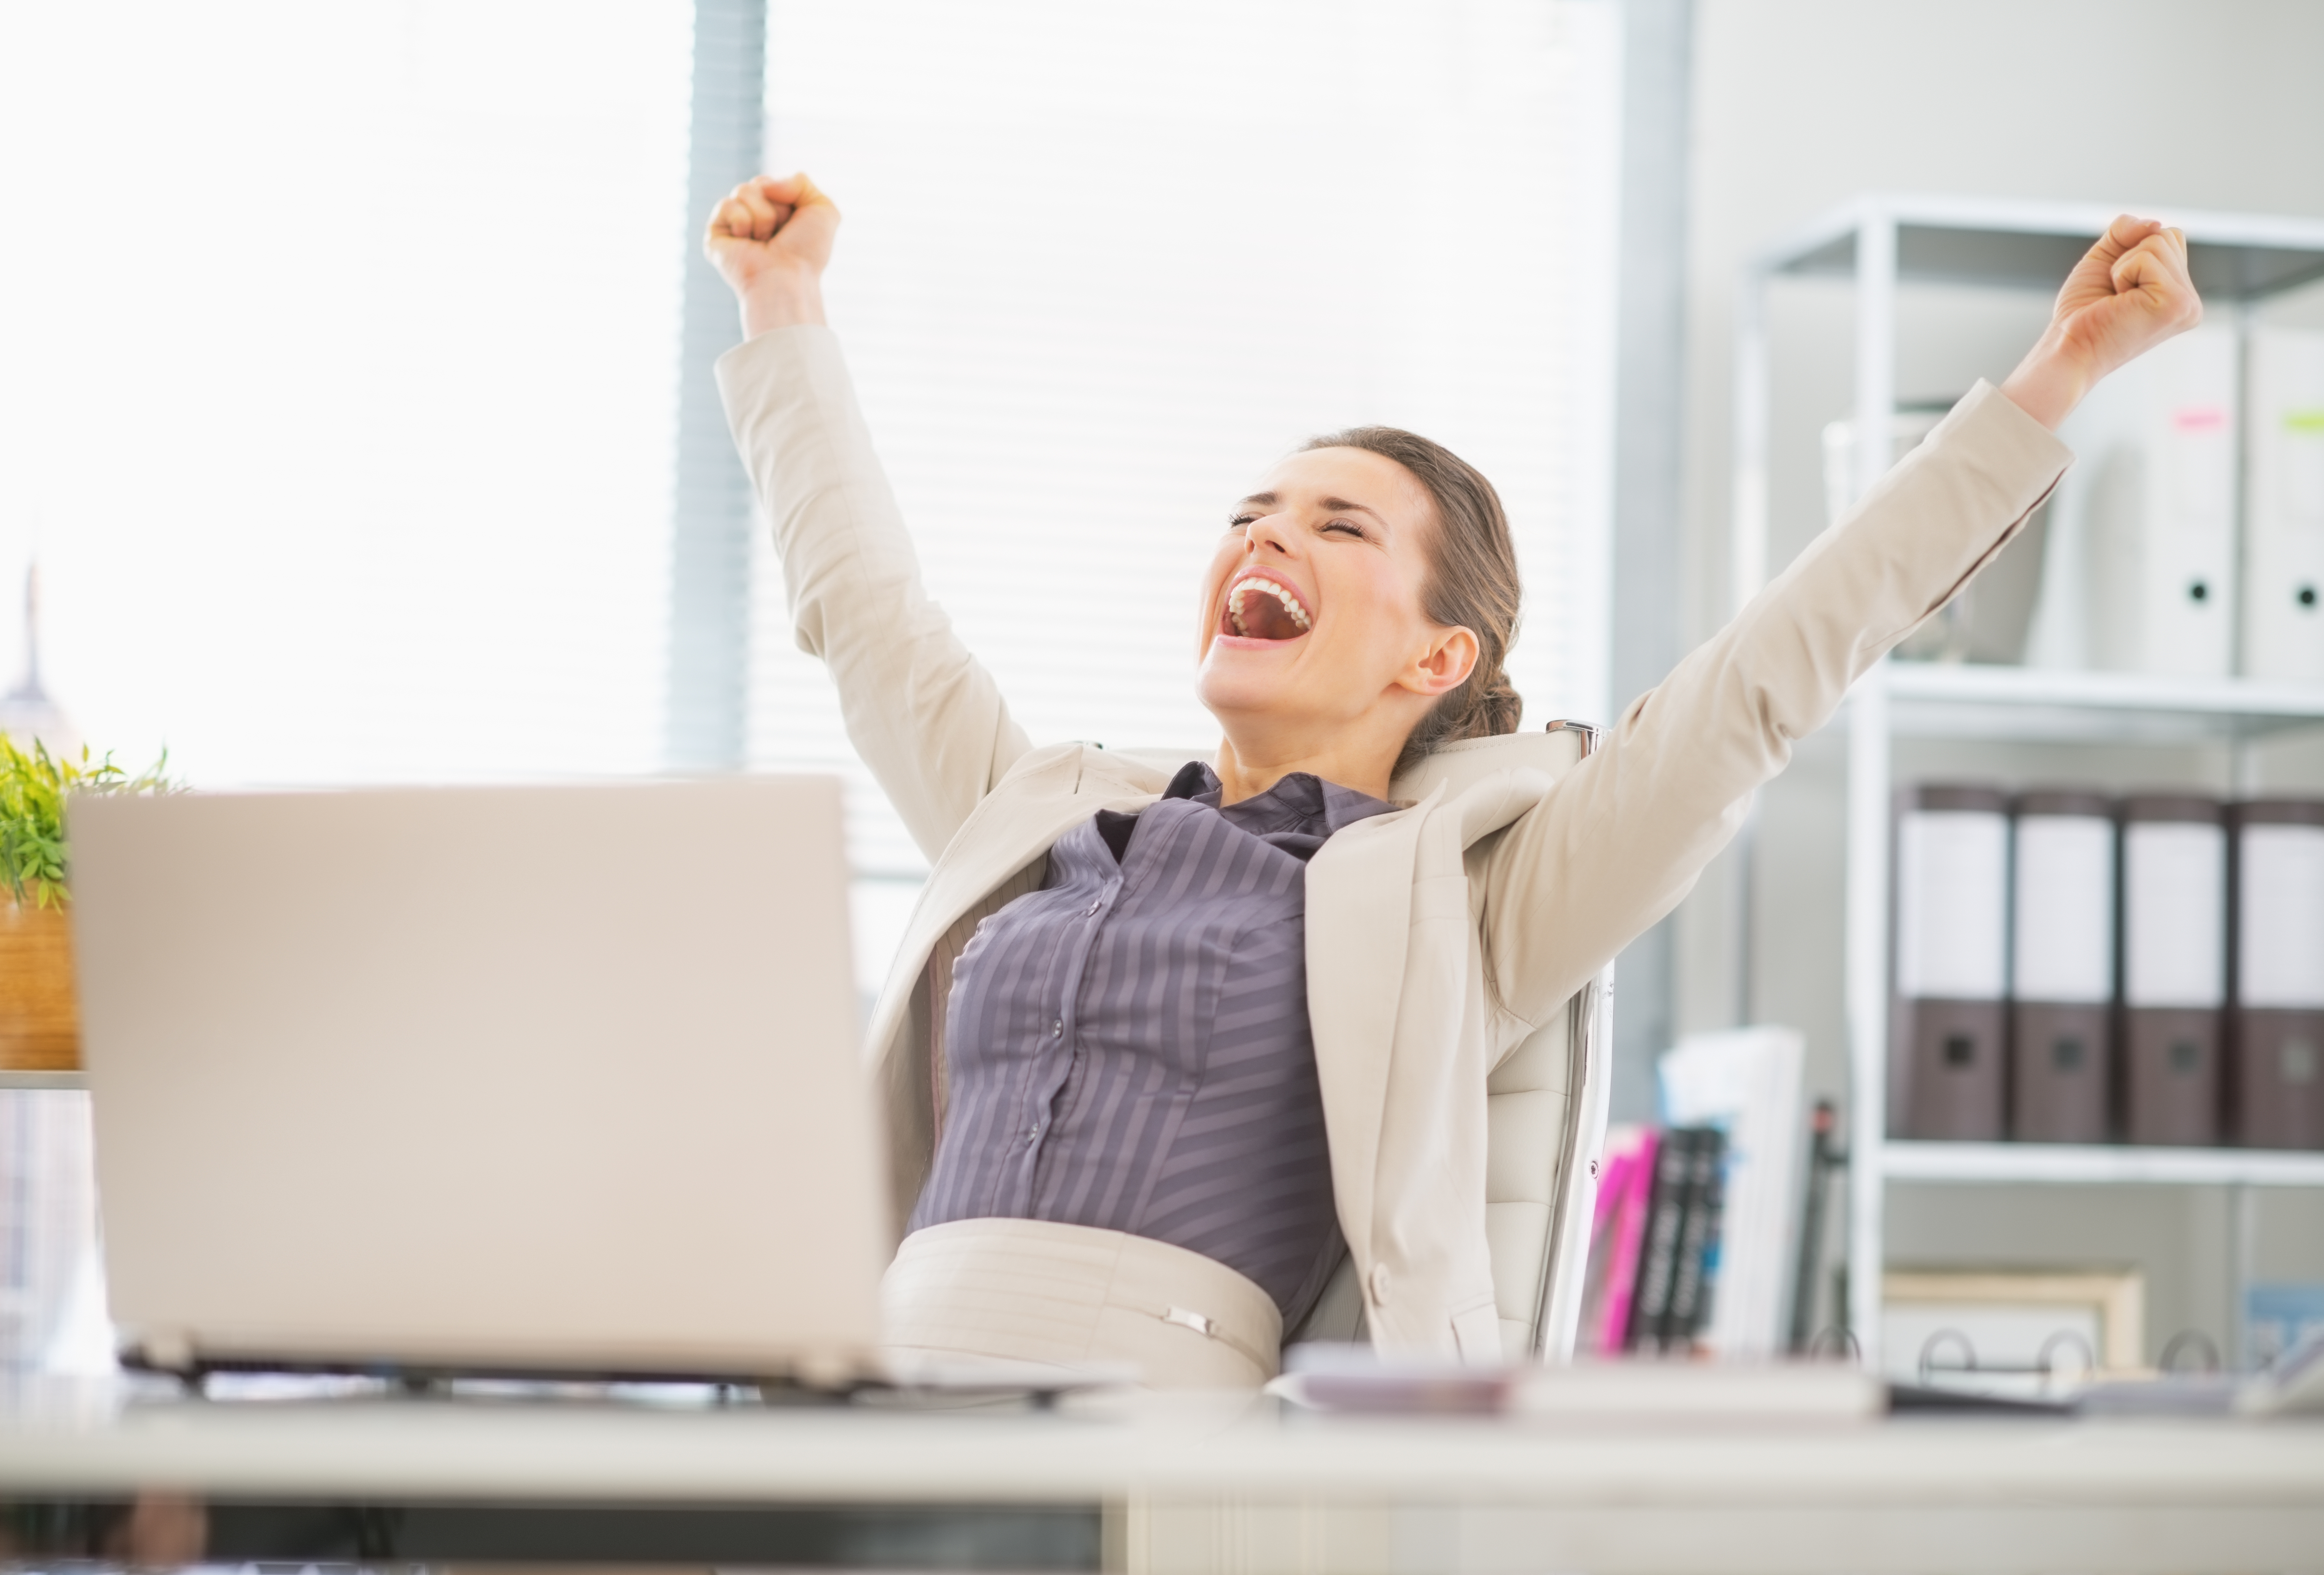 Удовлетворение 20. Люди в офисе радуются. Счастливые люди в офисе. Женщина в офисе. Работа в радость.